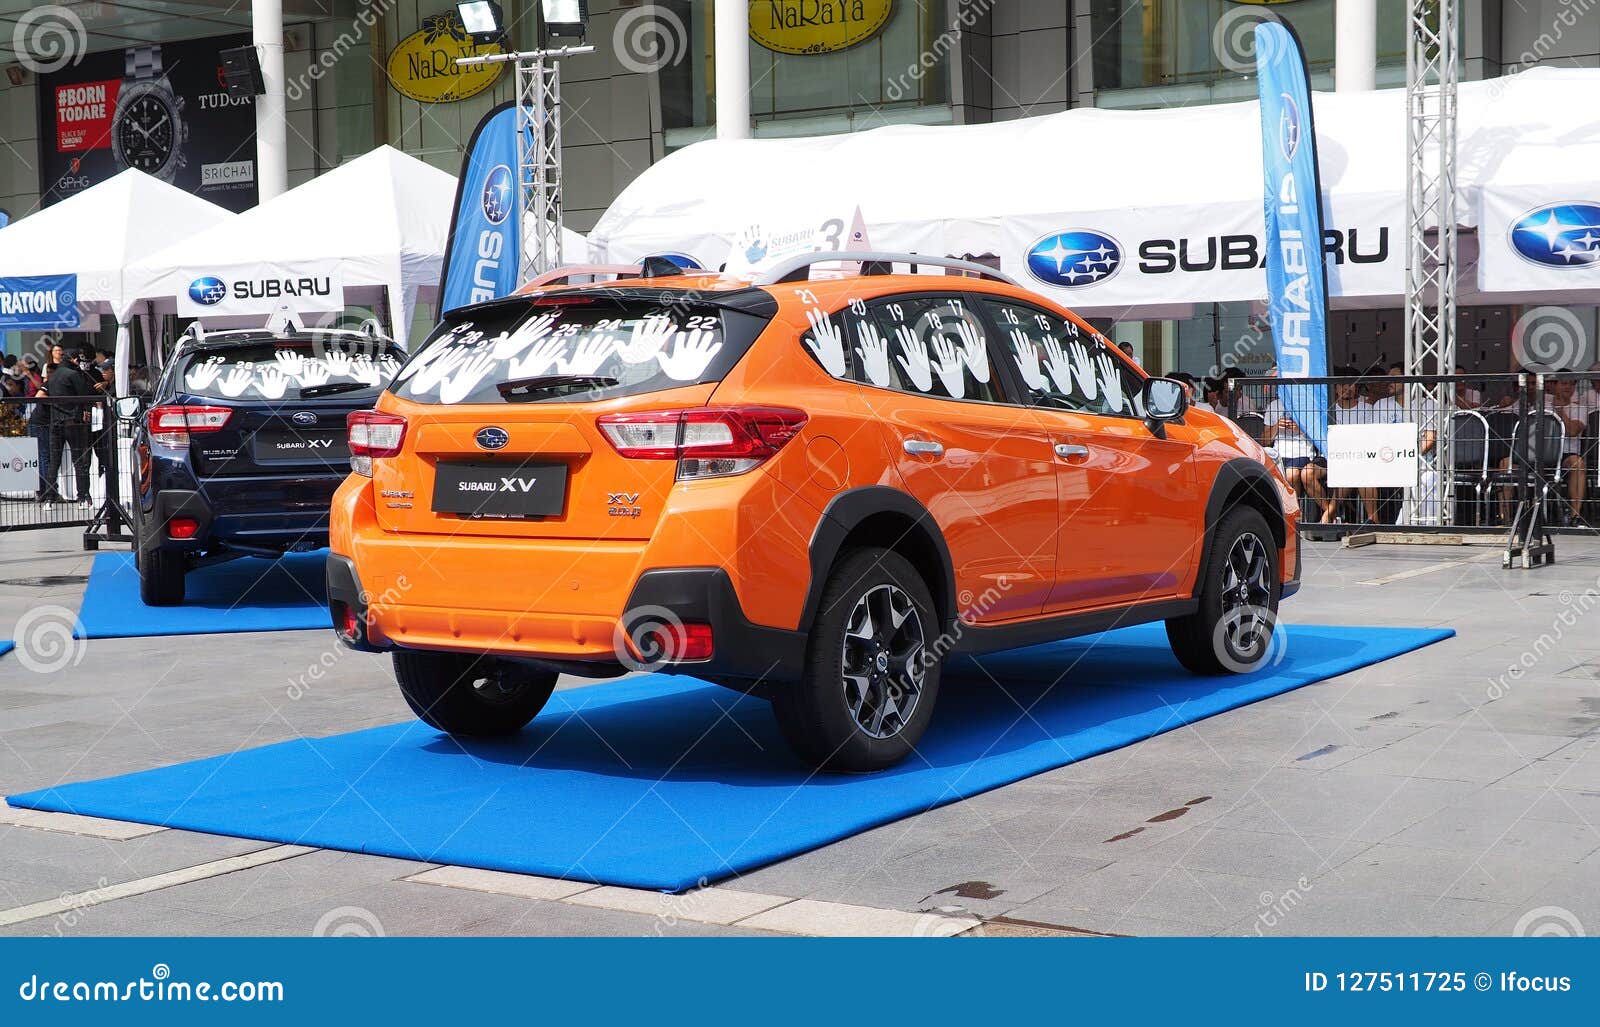 Subaru xv malaysia price